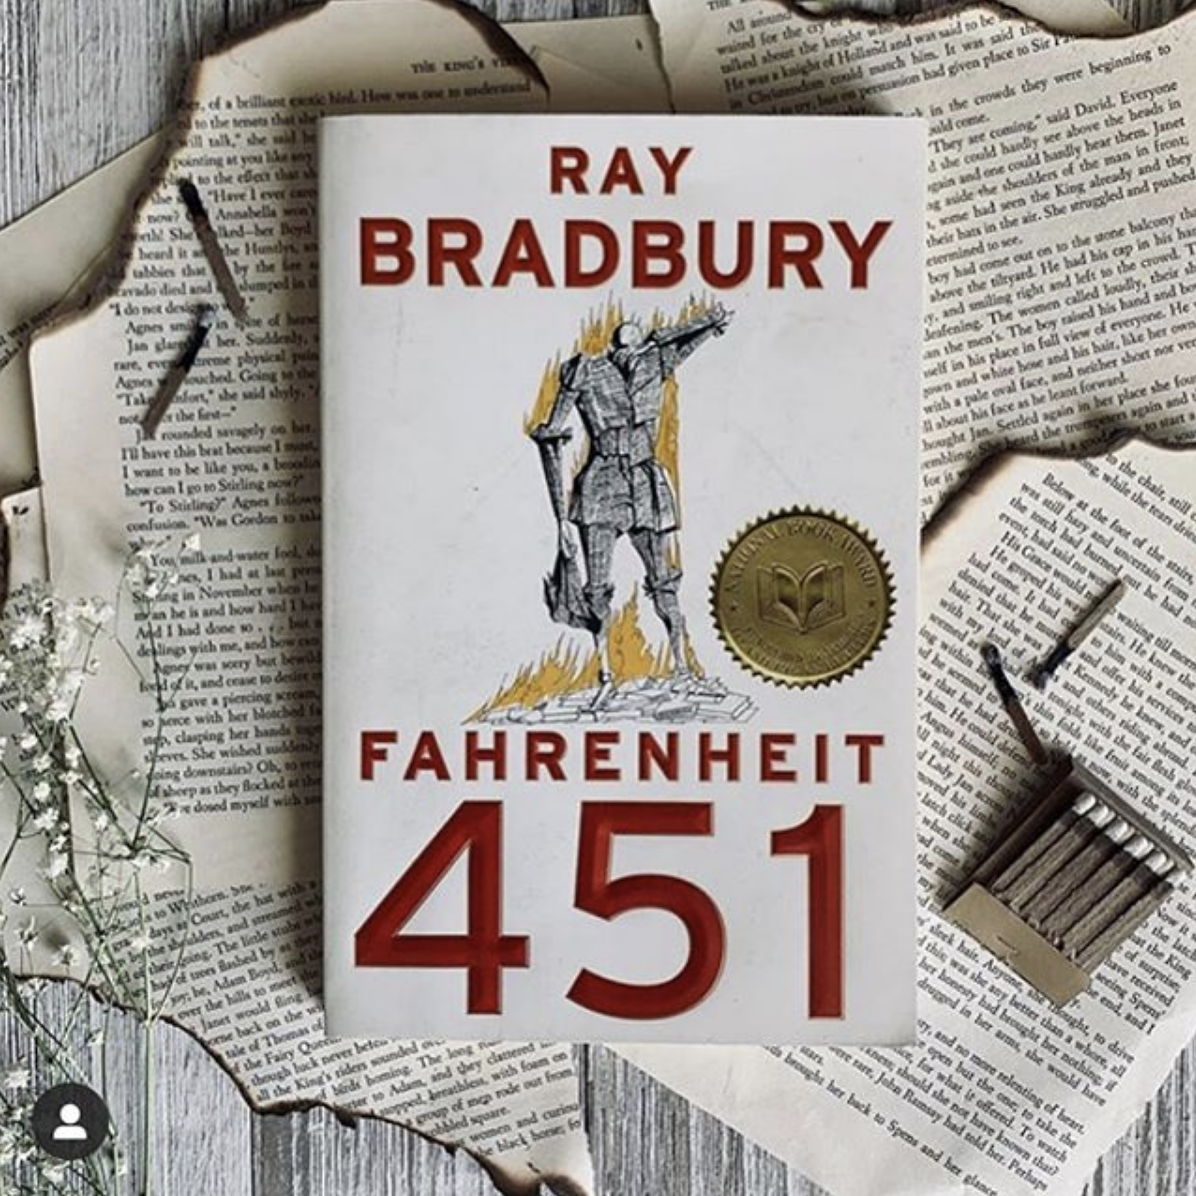 Ray Bradbury Readathon